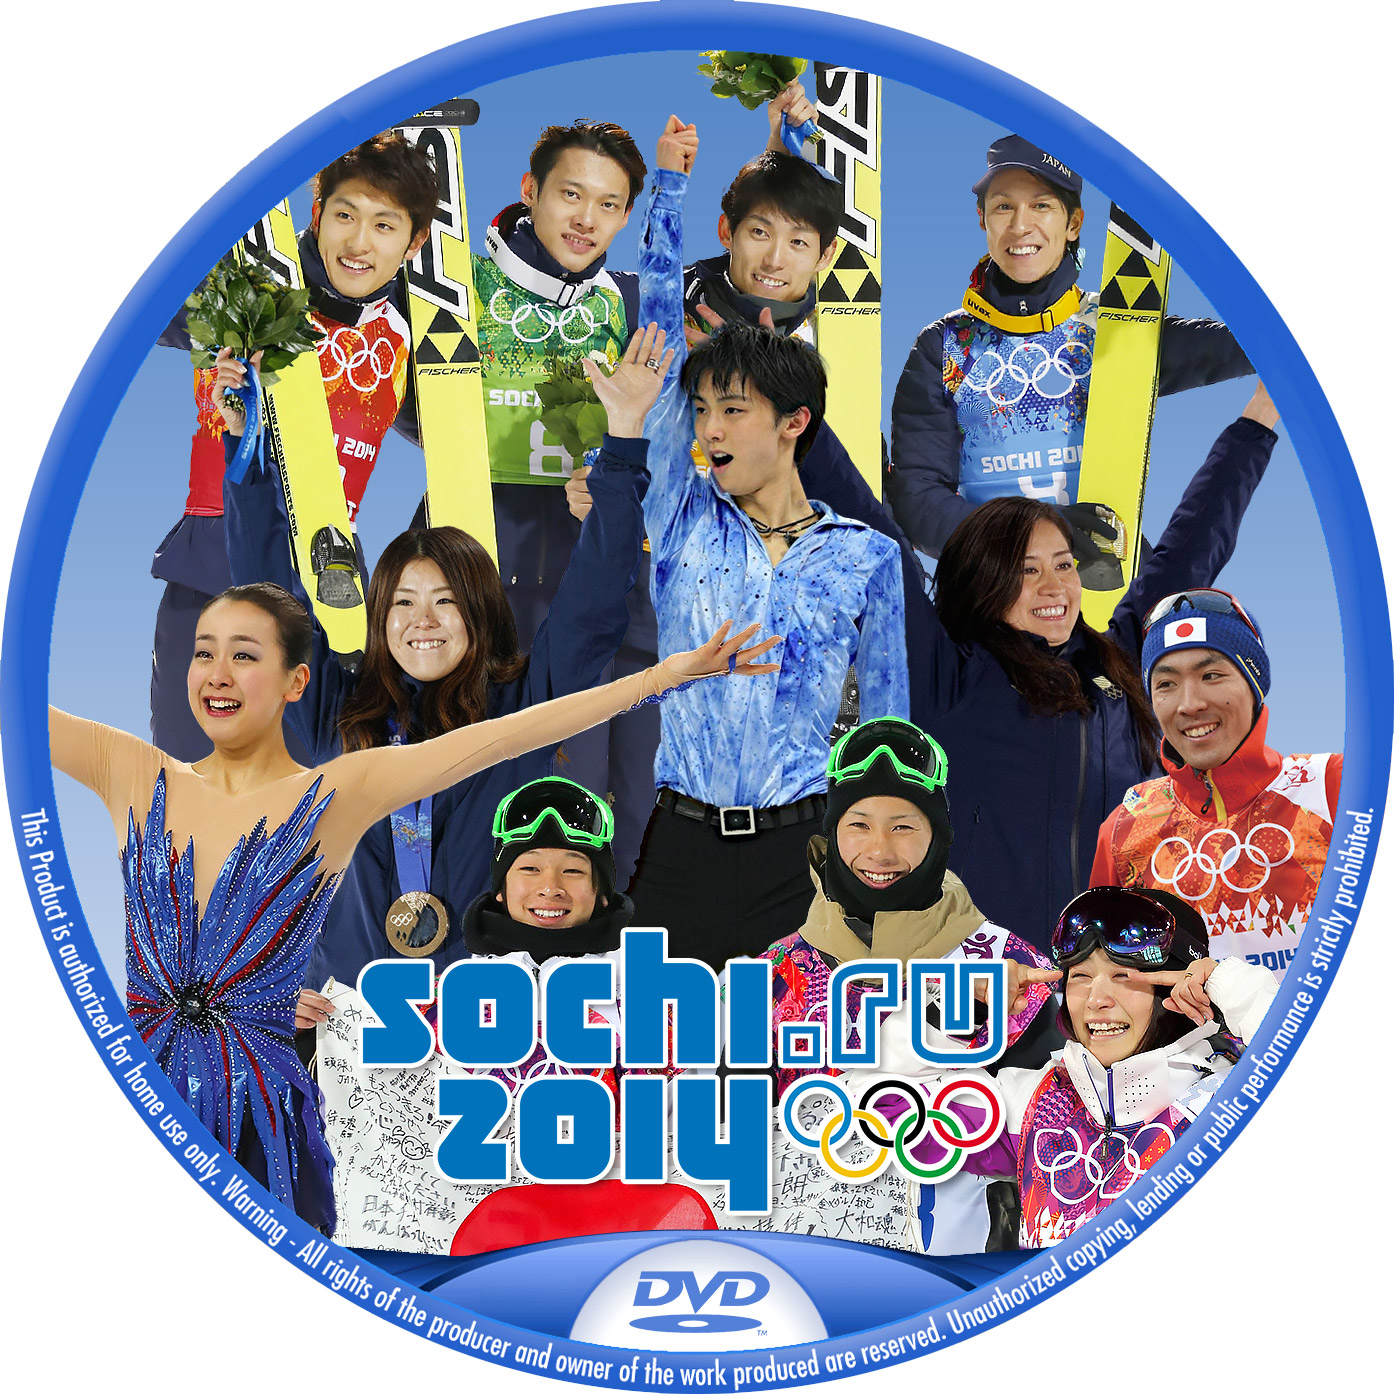 ソチオリンピック 日本人選手 DVDラベル